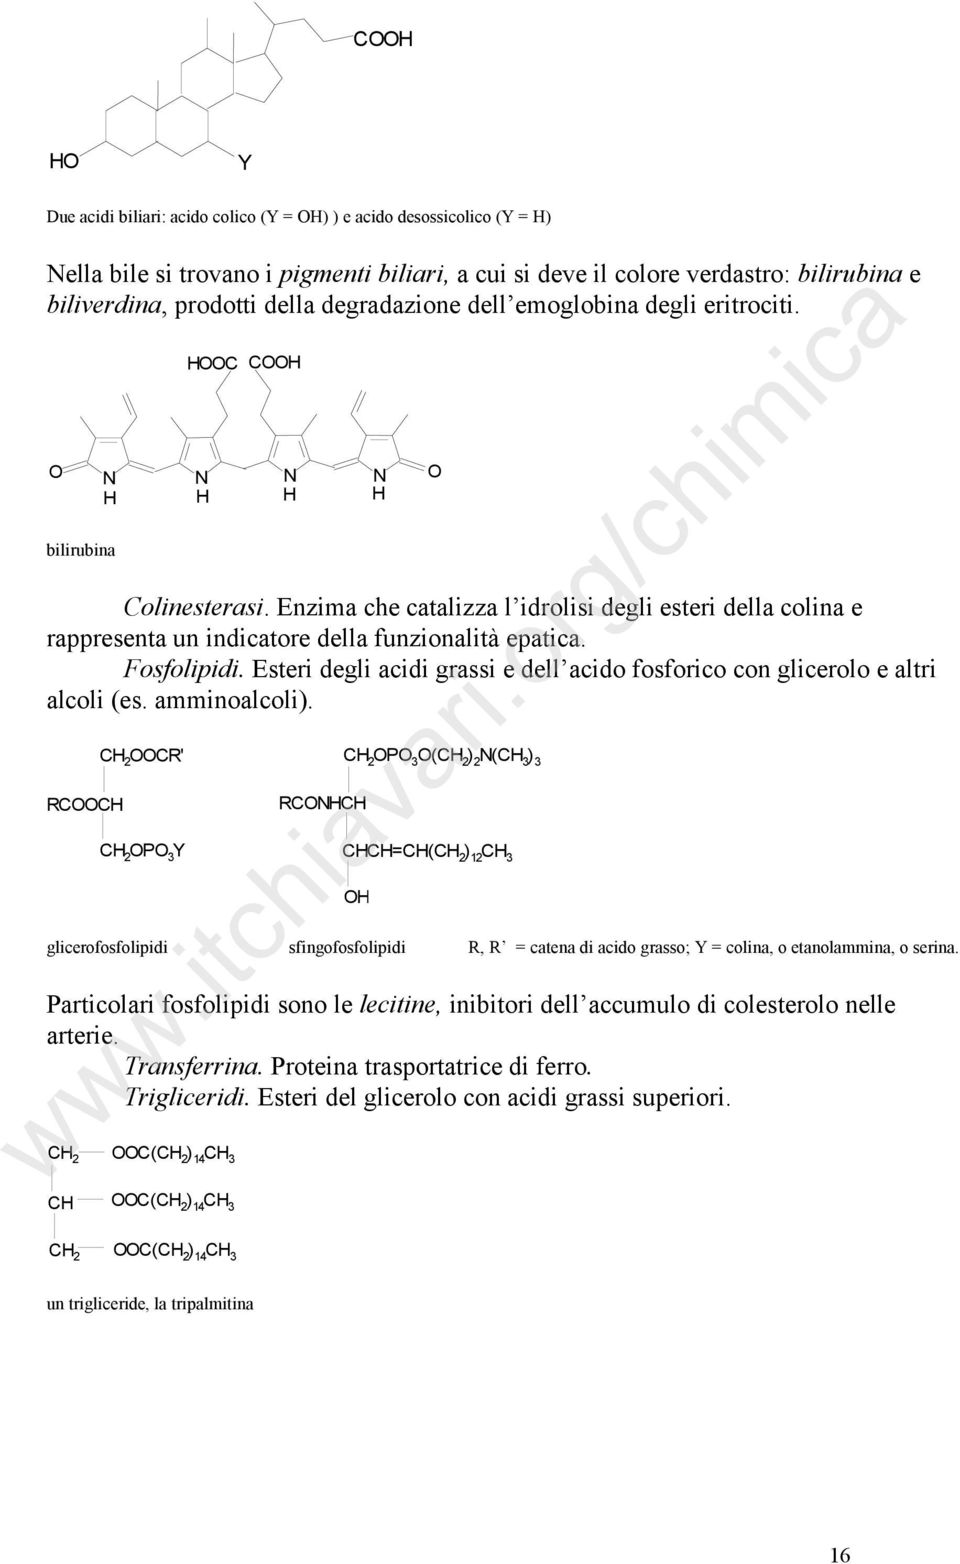 Fosfolipidi. Esteri degli acidi grassi e dell acido fosforico con glicerolo e altri alcoli (es. amminoalcoli).